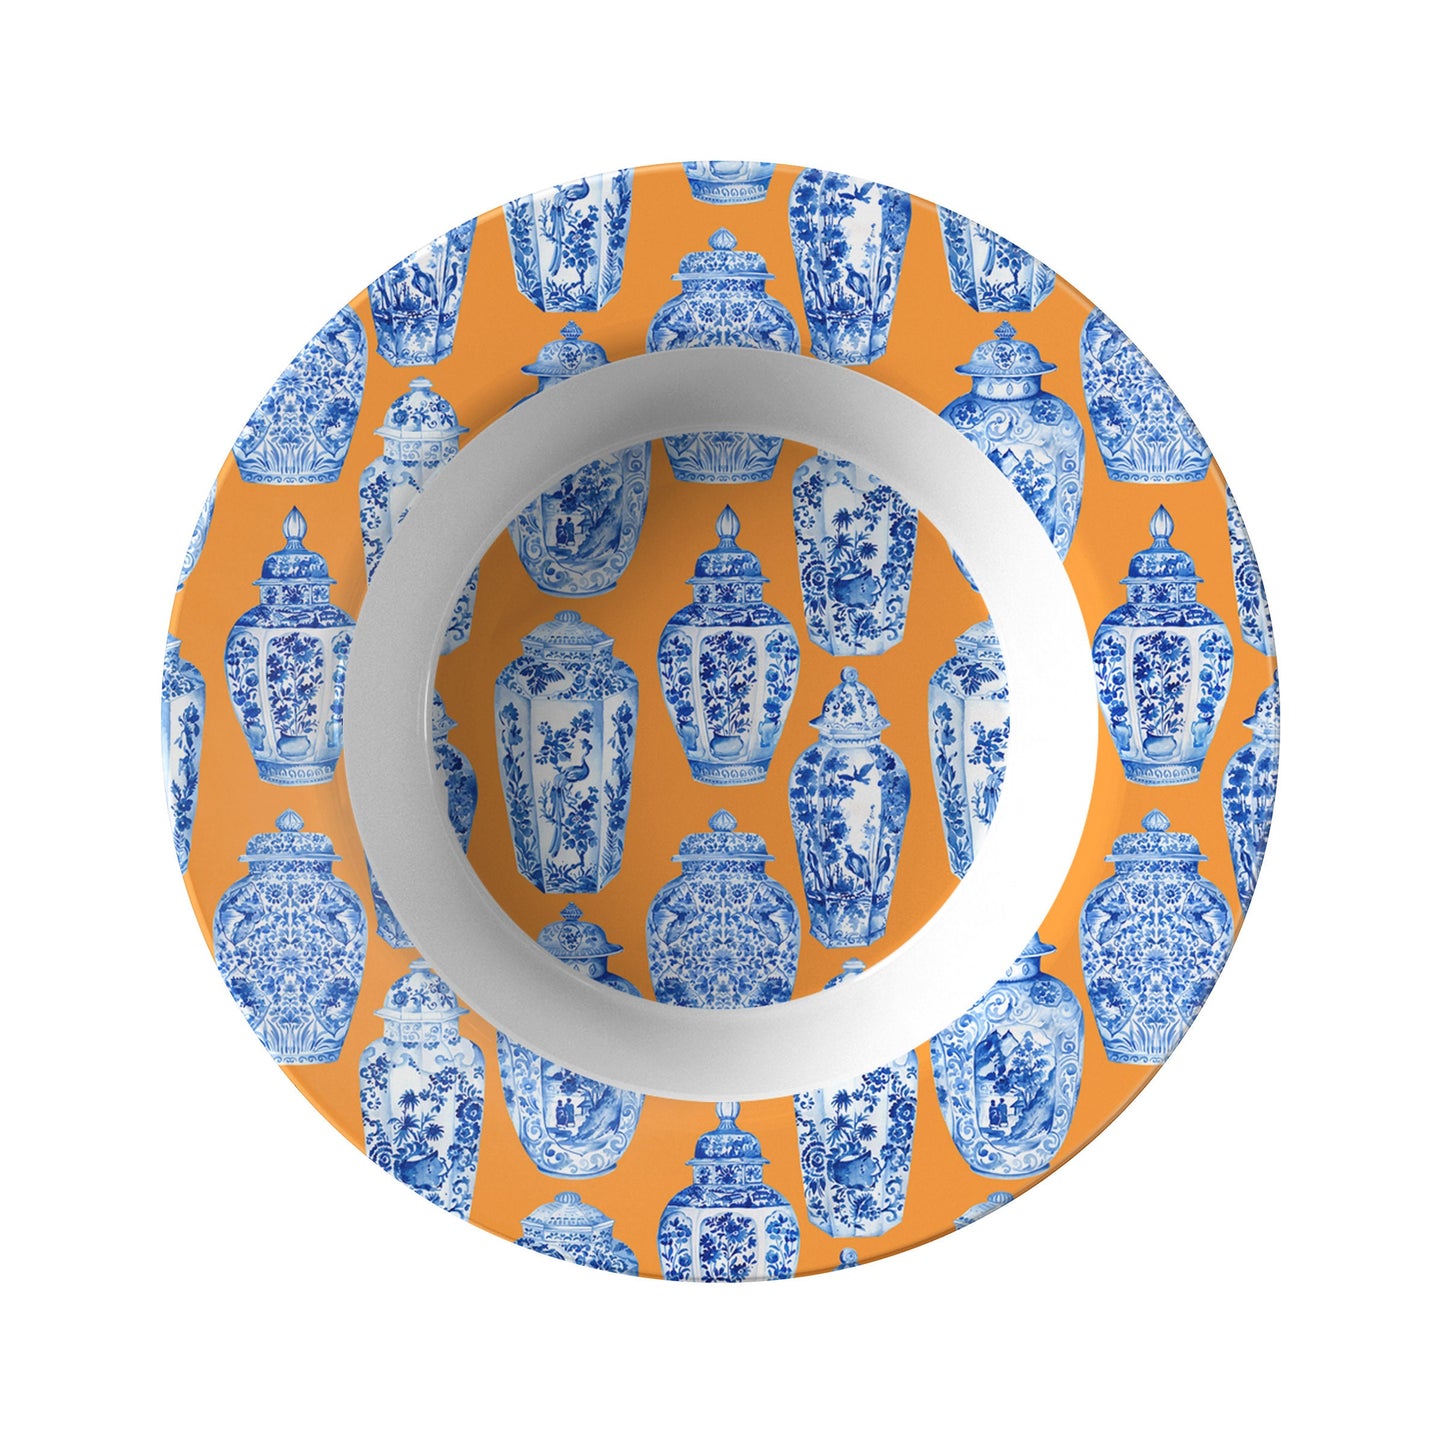 Chinoiserie Ginger Jar Bowls, Set of 4, Orange & Blue, Luxury Thermosaf Plastic